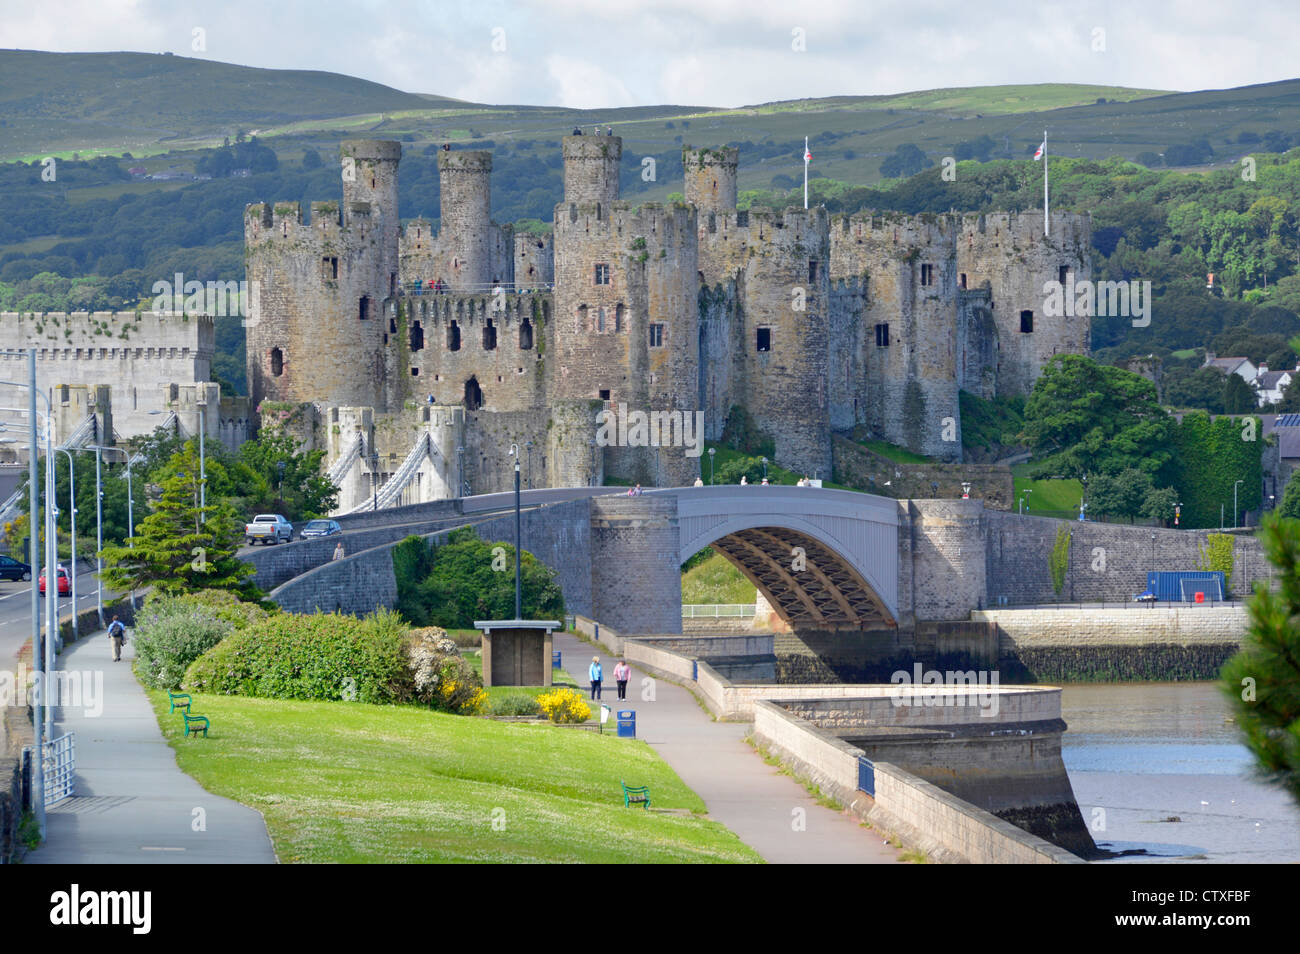 Château médiéval de Conwy un site du patrimoine mondial de l'UNESCO avec pont routier moderne traversant la rivière Conwy campagne vallonnée galloise au-delà dans le nord du pays de Galles Royaume-Uni Banque D'Images